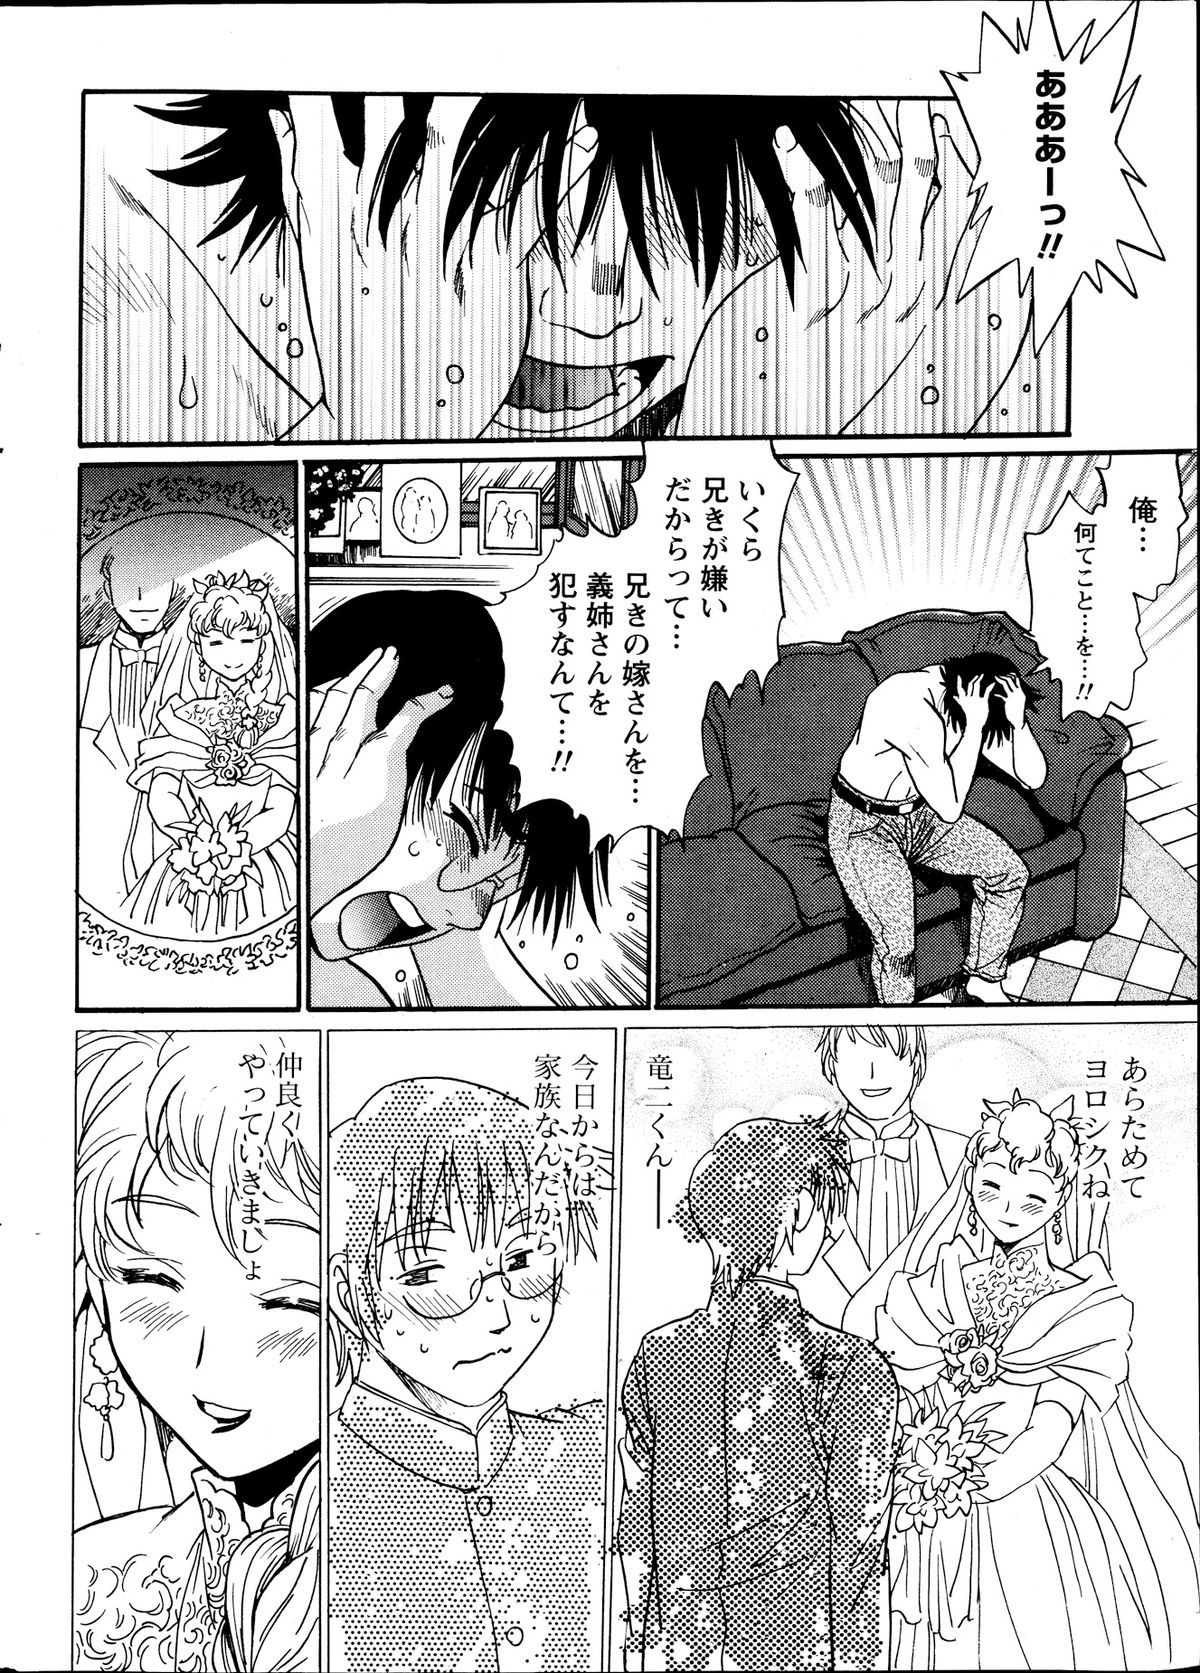 [Manabe Jouji] Dokusai Club Ch.01-13 page 6 full